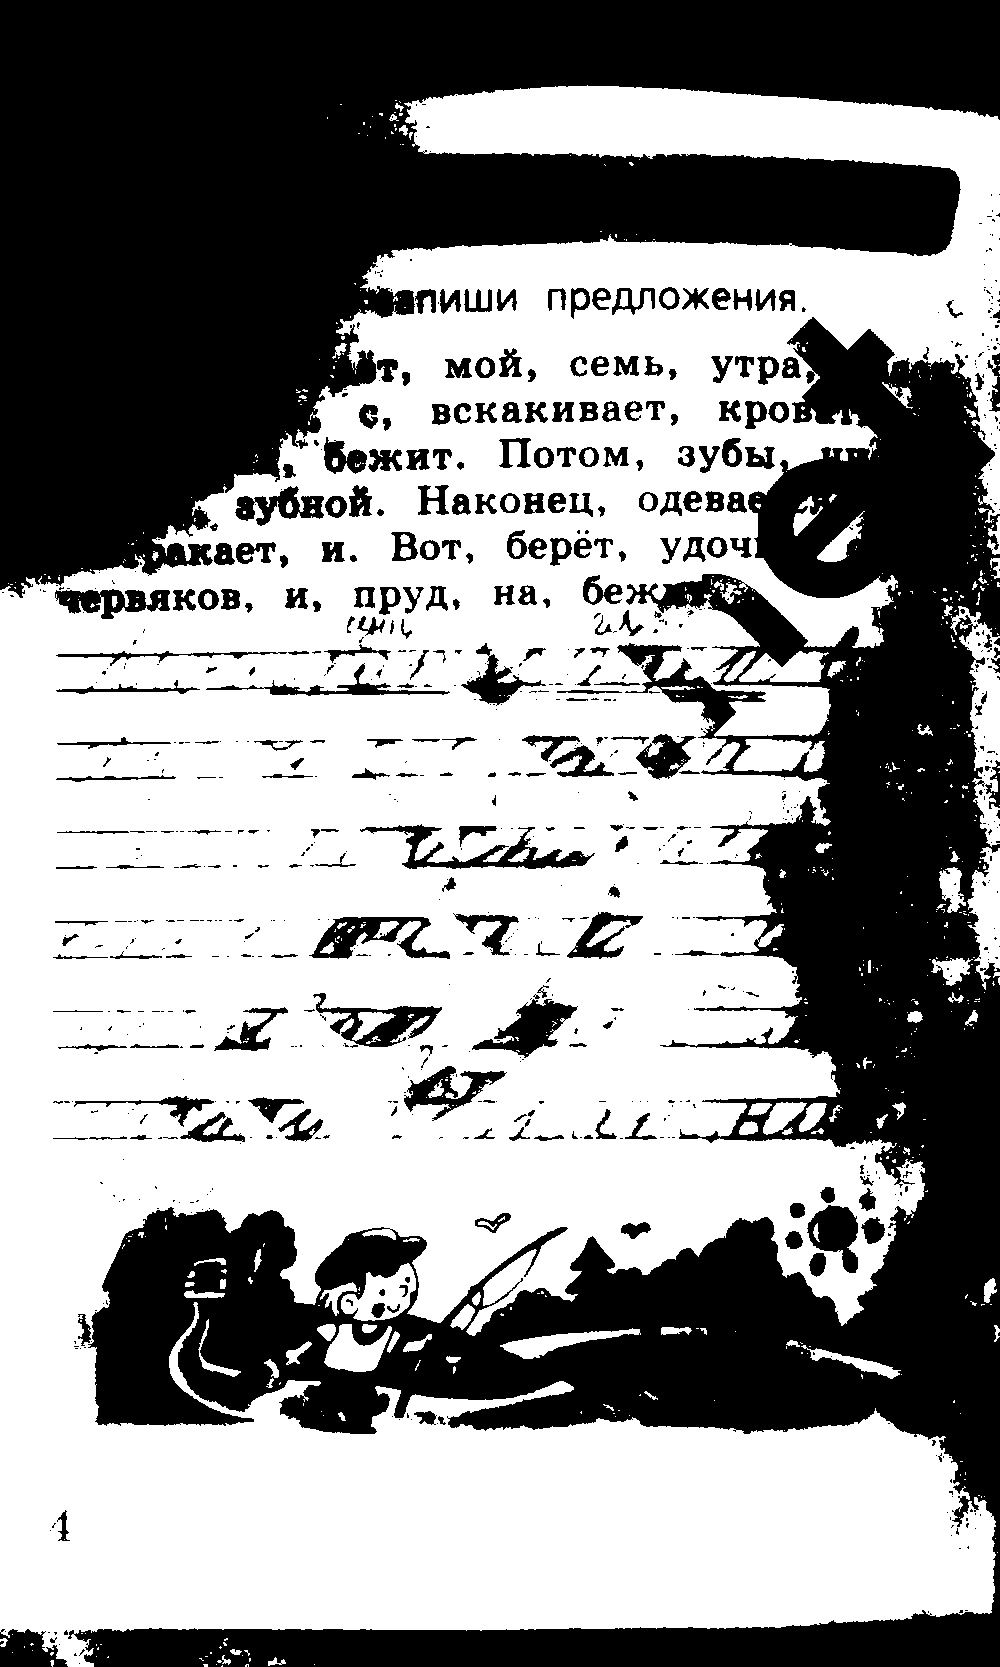 ГДЗ Русский язык 2 класс - стр. 4